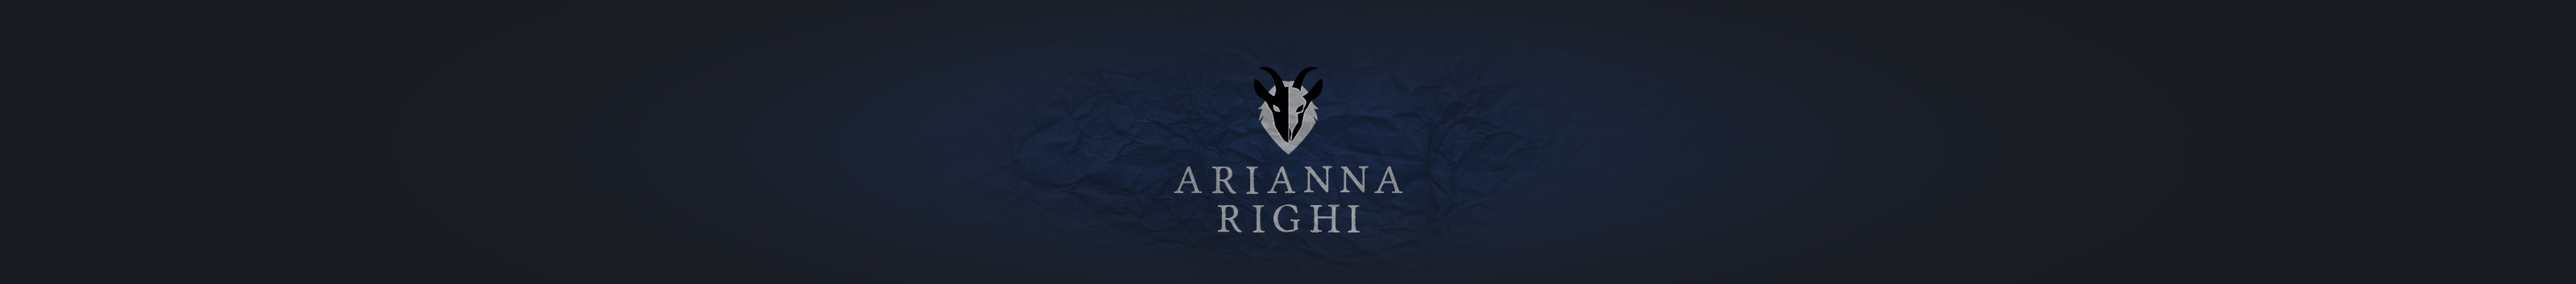 Banner profilu uživatele Arianna Righi